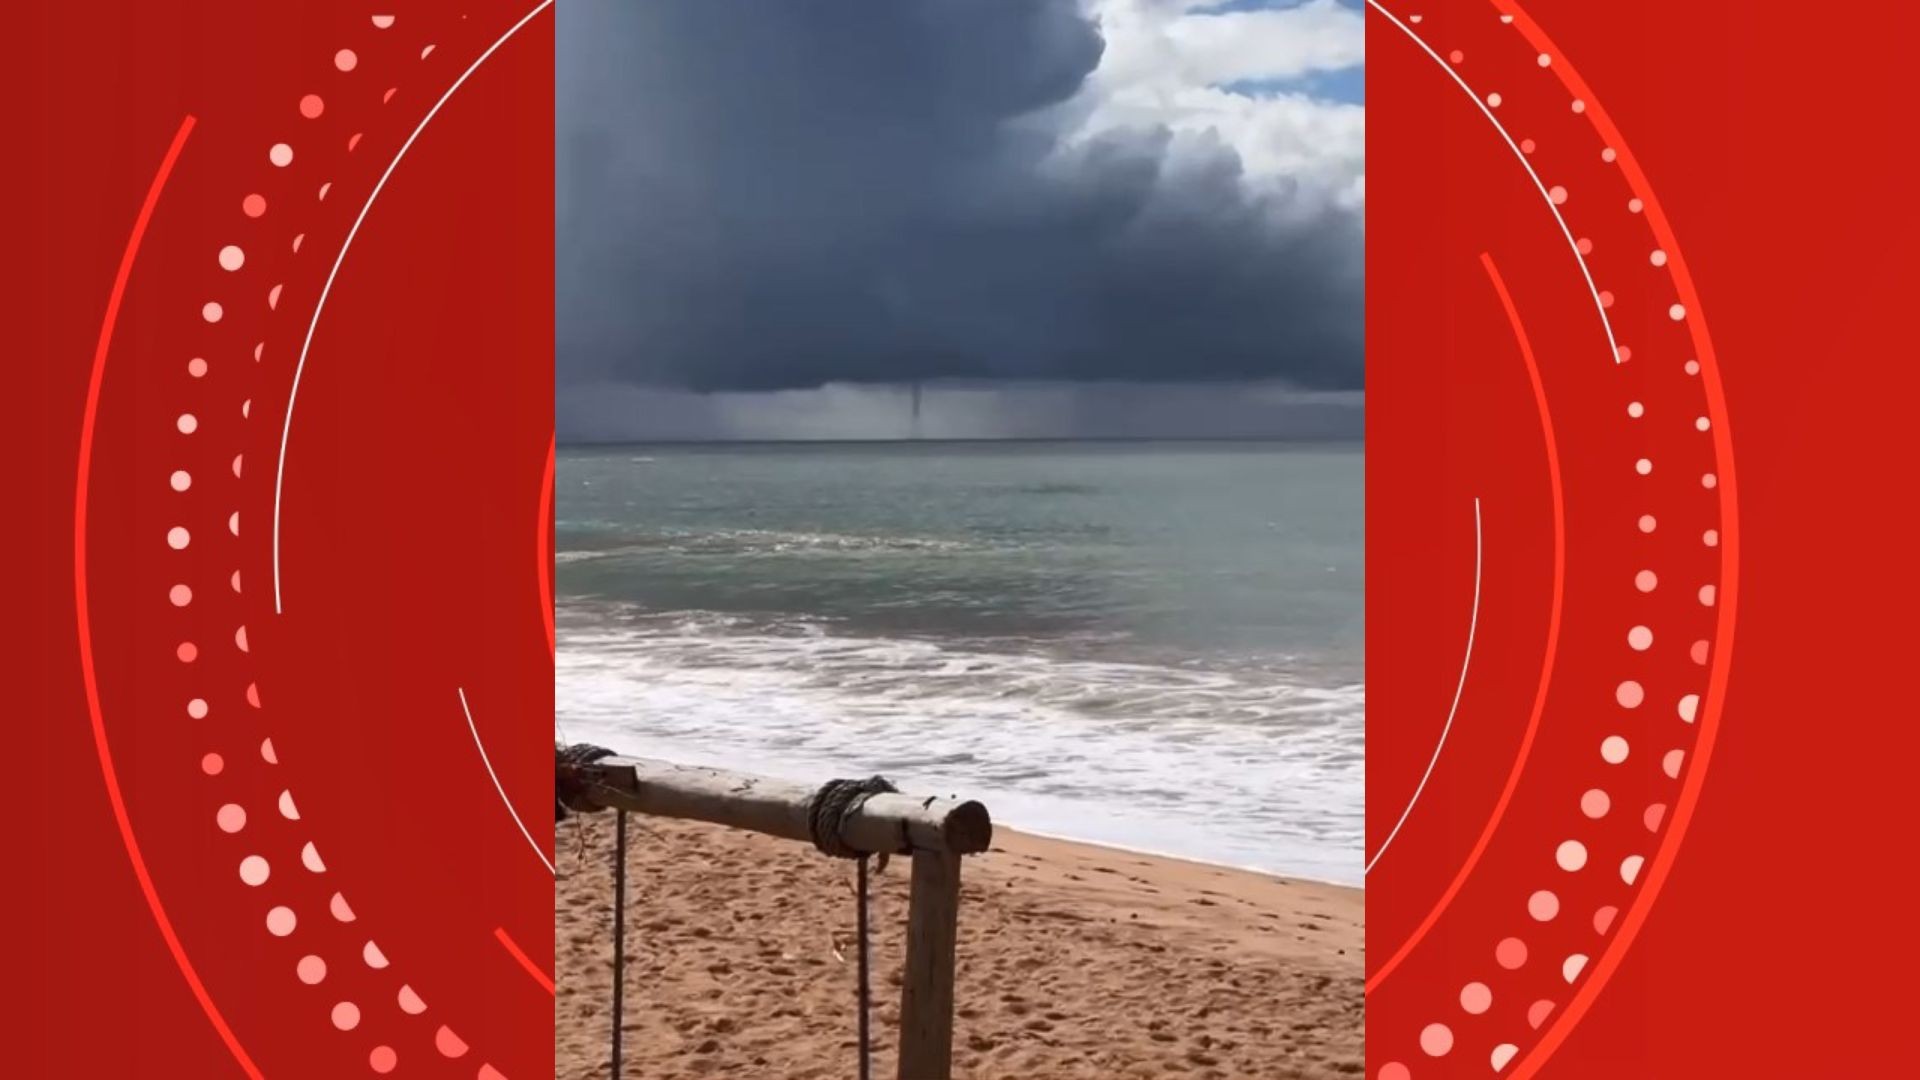 VÍDEO: Tromba d'água é registrada em praia do ES; entenda o fenômeno